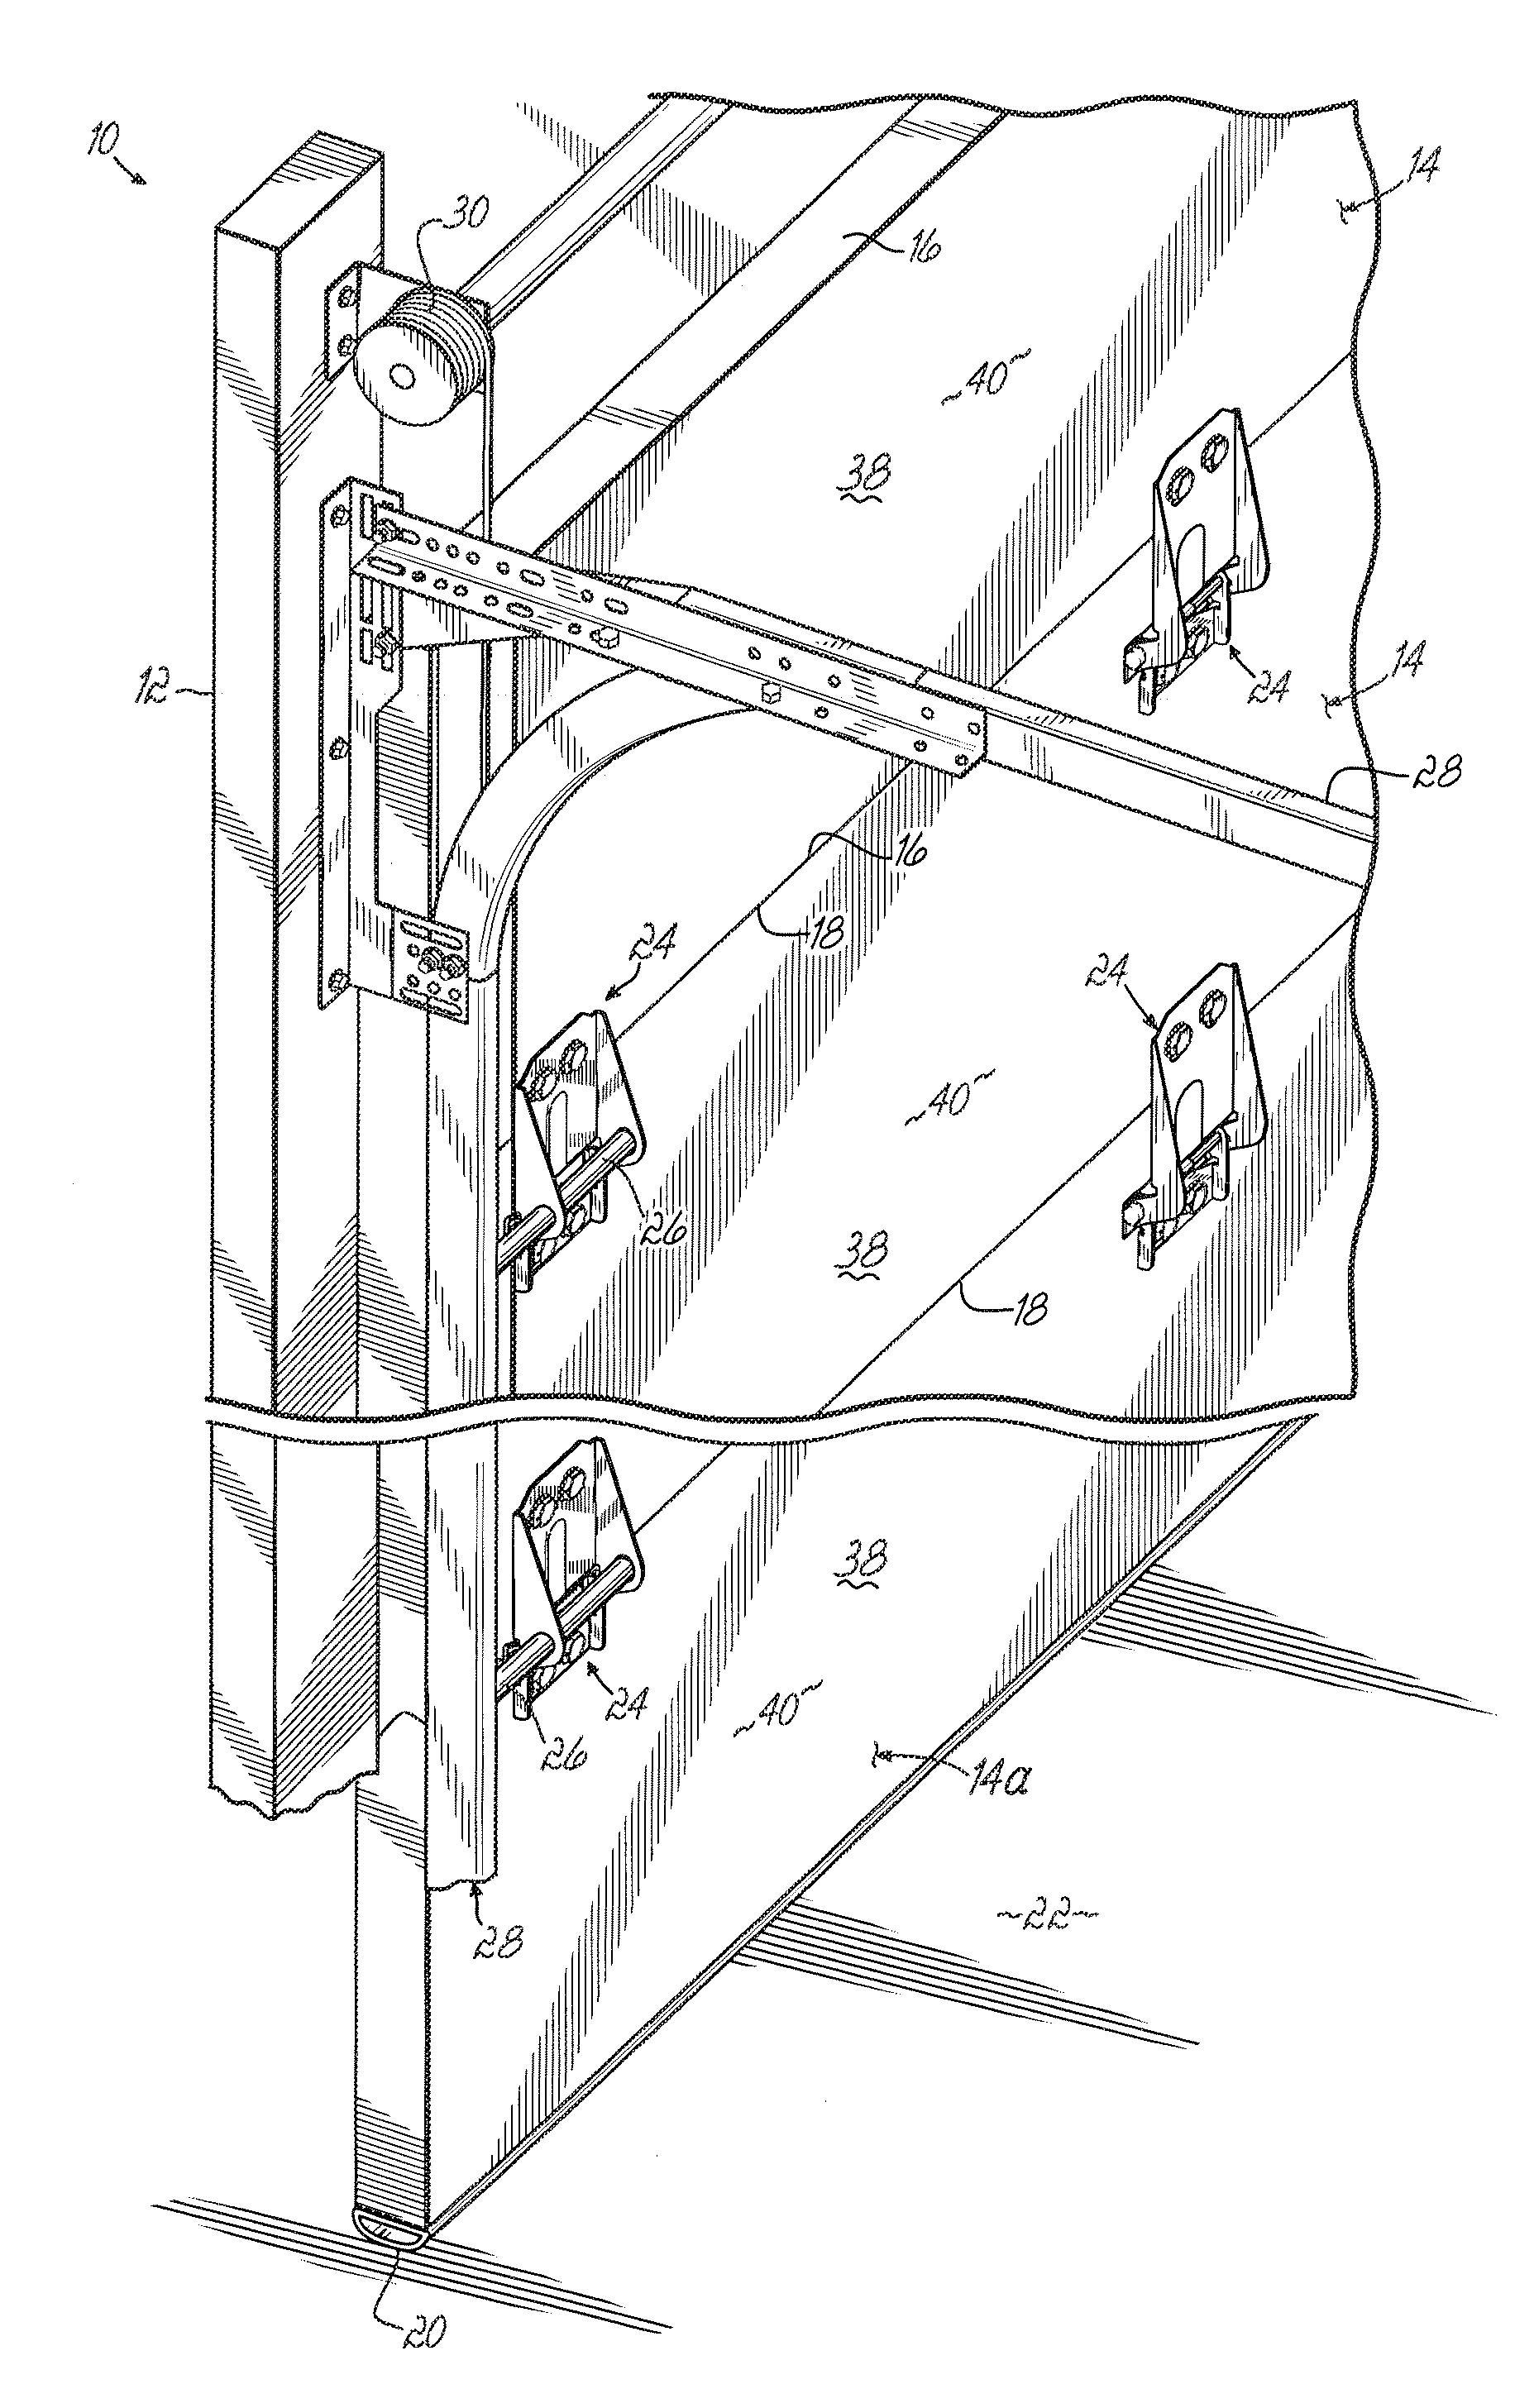 Method of making an optimized overhead sectional door and associated door panel